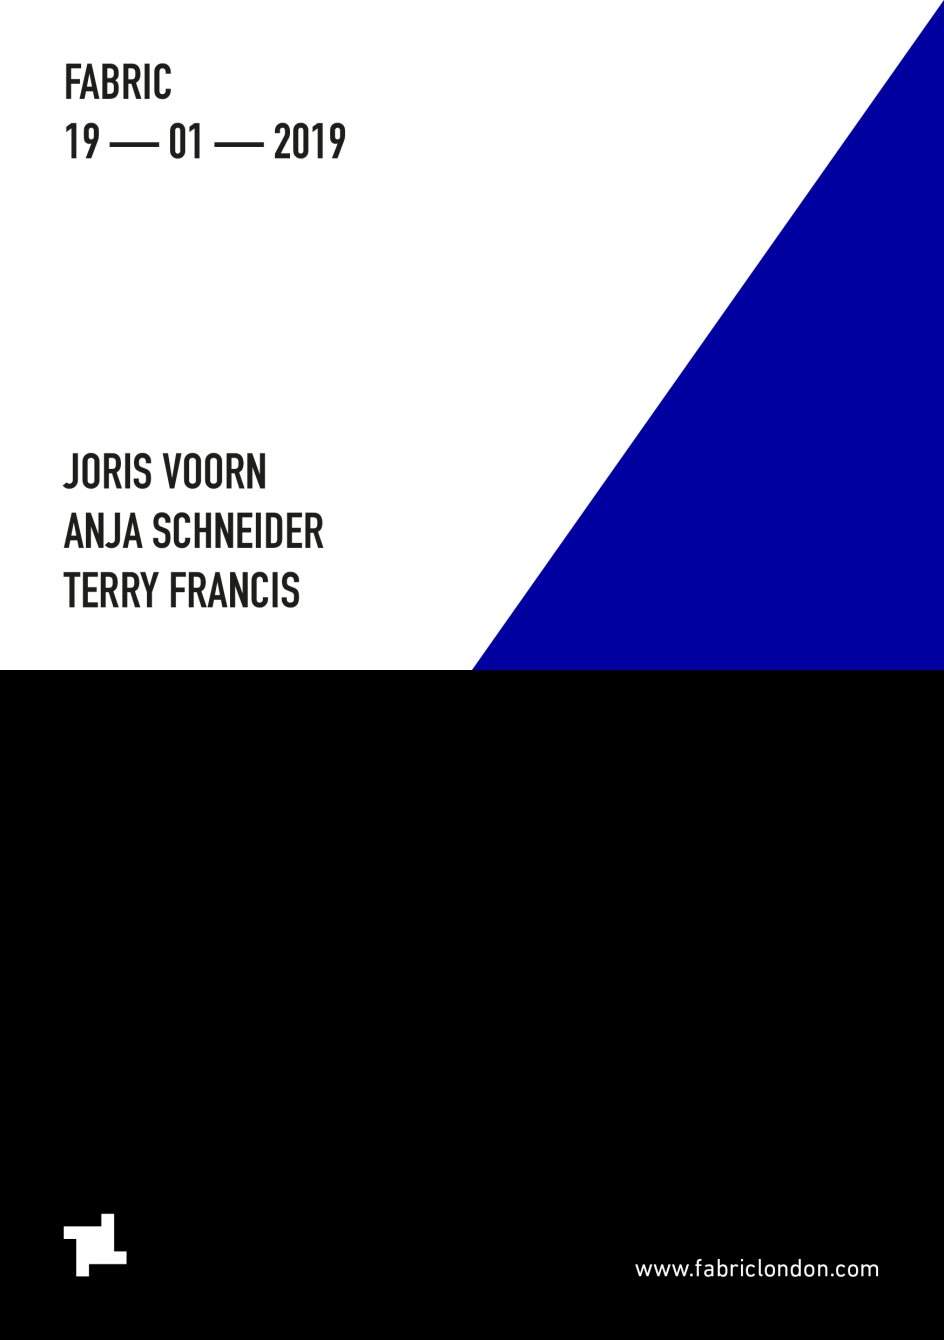 fabric: Joris Voorn, Anja Schneider & Terry Francis - Página trasera